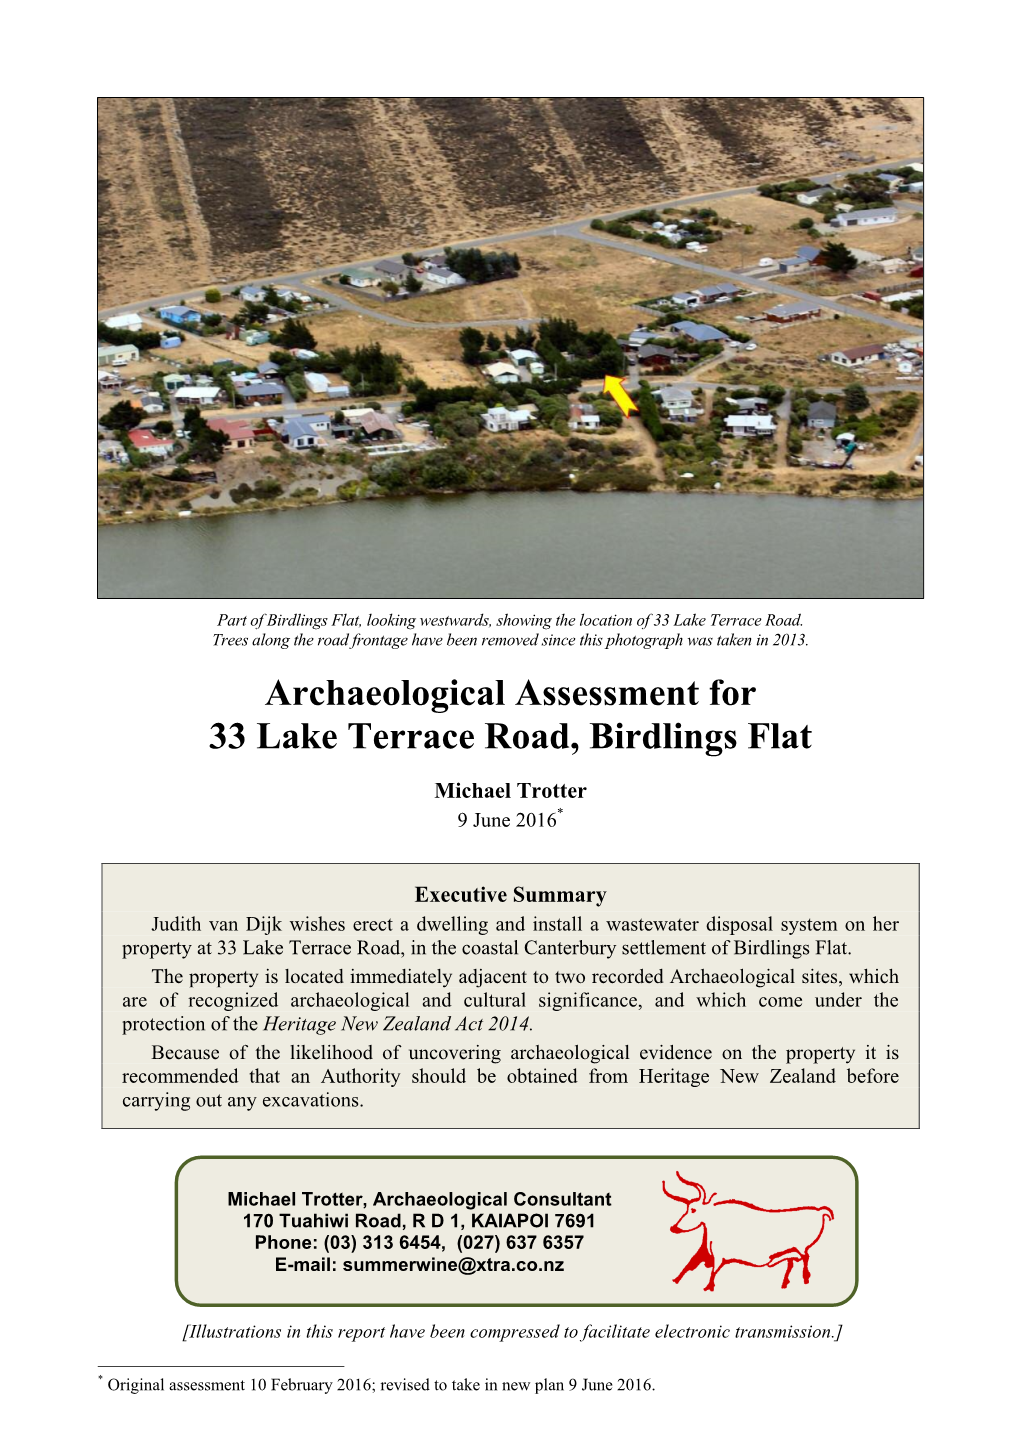 Archaeological Assessment for 33 Lake Terrace Road, Birdlings Flat